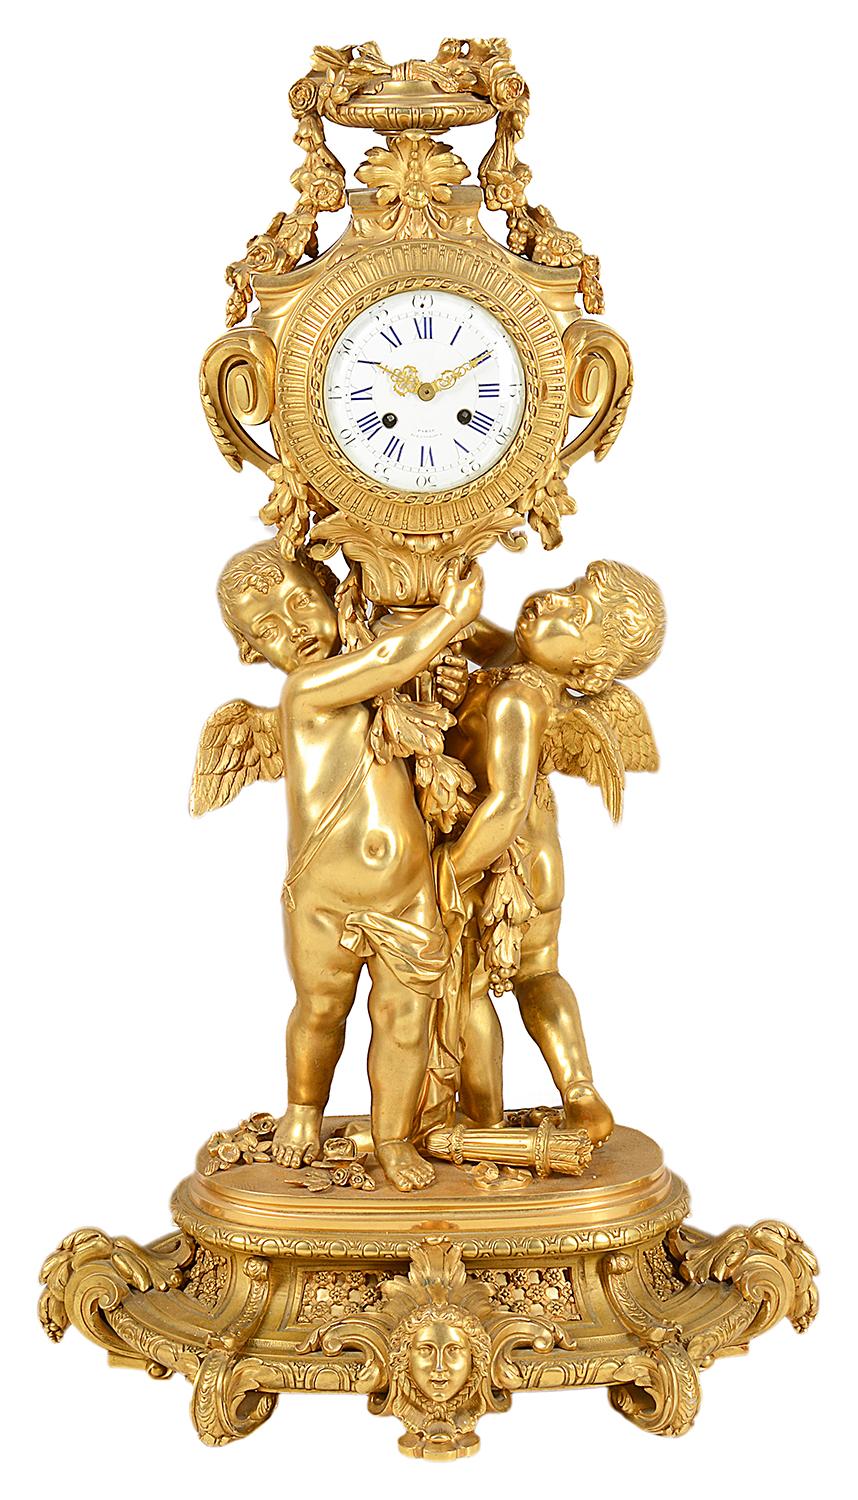 Une très impressionnante garniture d'horloge de style Louis XVI en bronze doré, l'horloge et le candélabre étant soutenus par des chérubins ailés, des guirlandes et des feuillages en volutes et des montures de masques classiques. Le cadran de